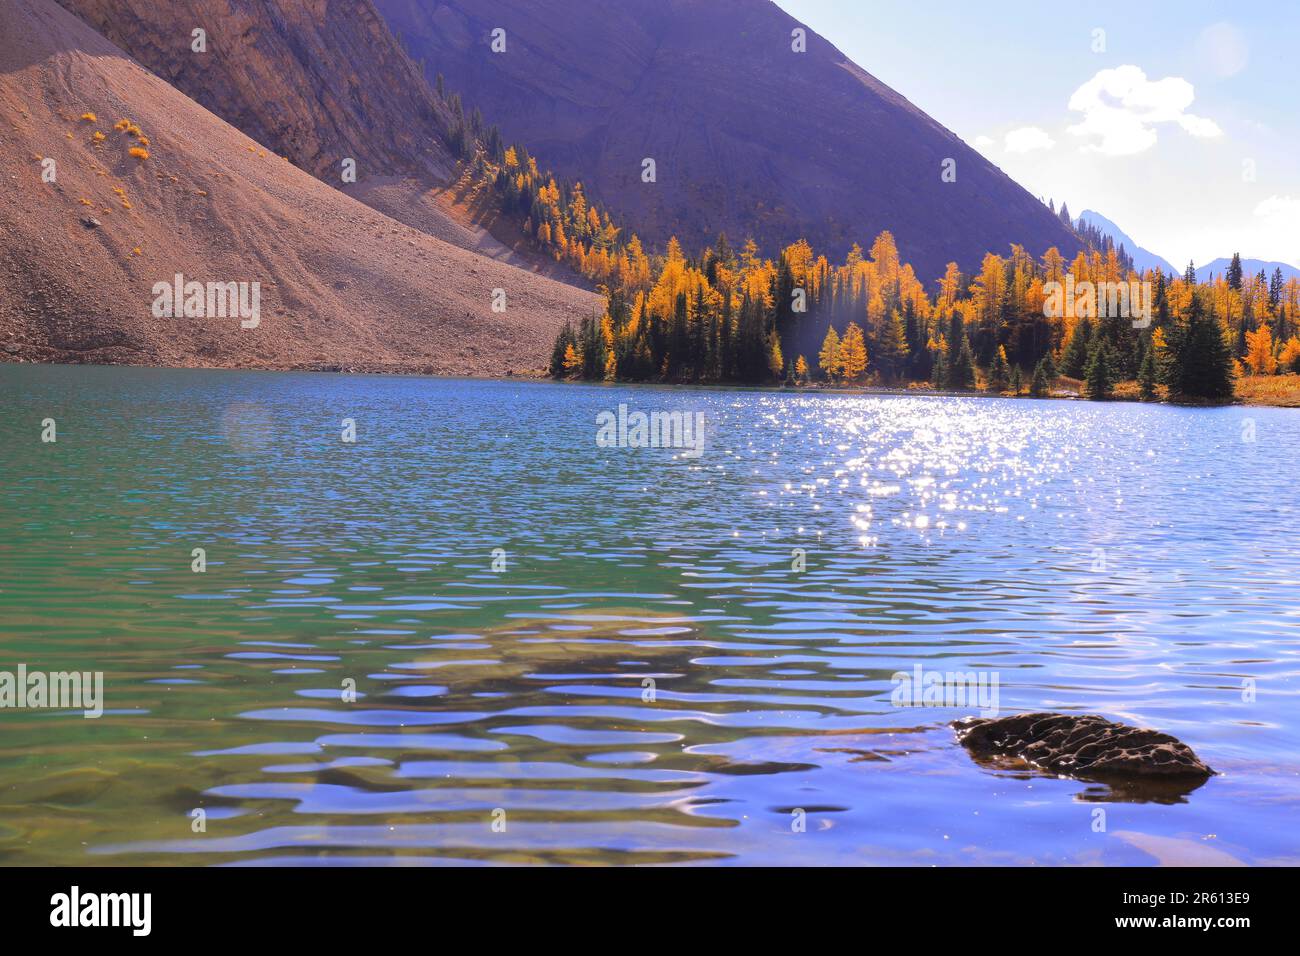 Für diejenigen, die ein horizontales Bild von Chester Lake bevorzugen, ist es hier. Ich liebe dieses Juwel aus den Kanadischen Rockies Stockfoto